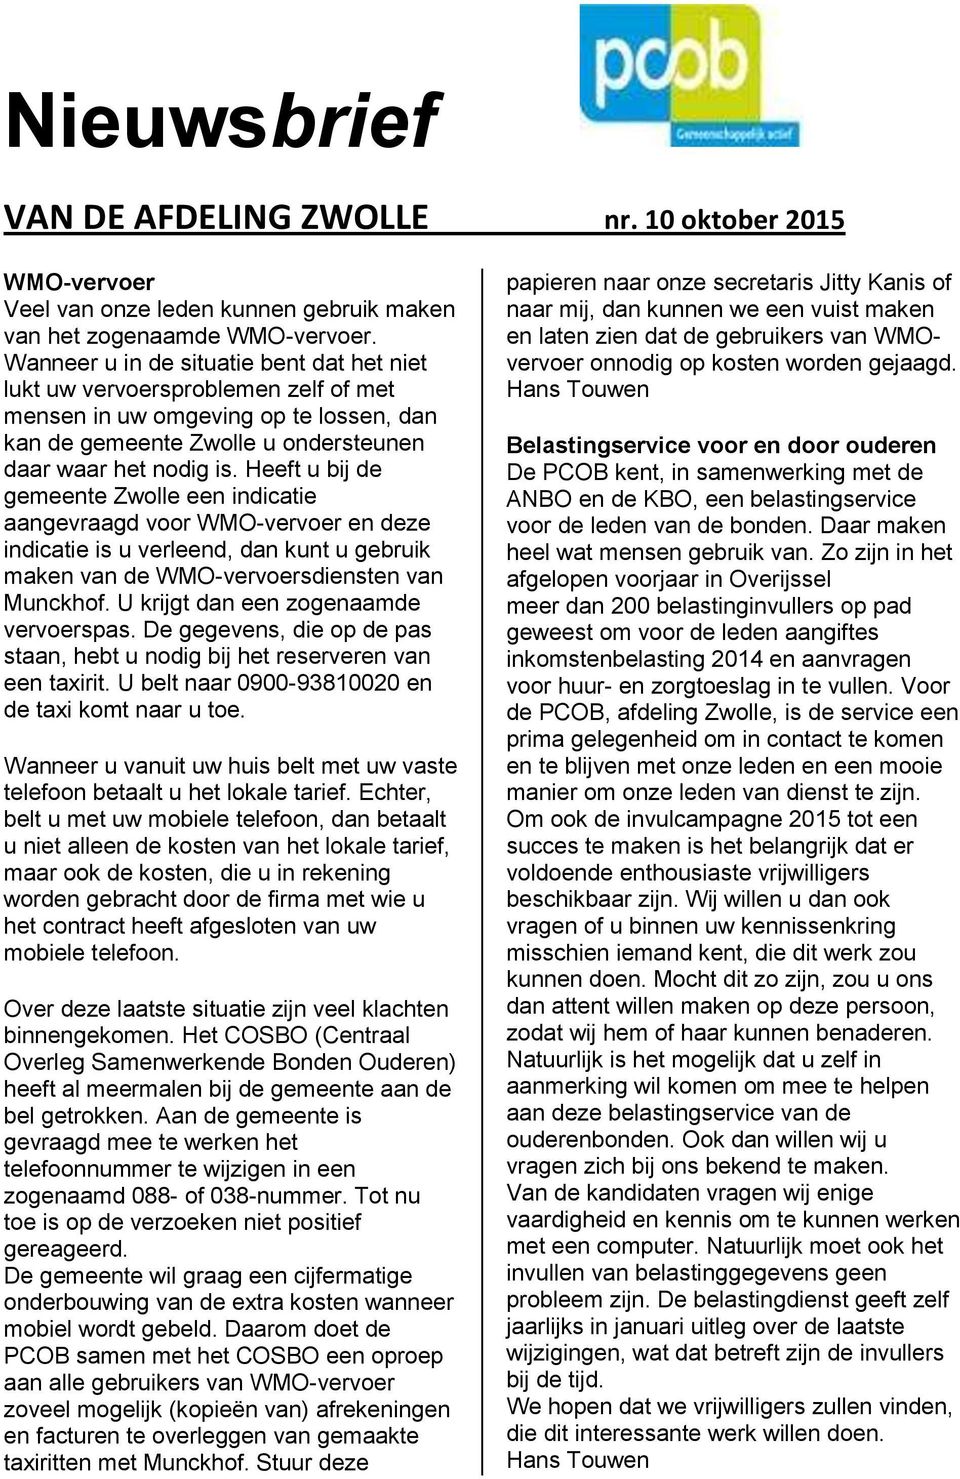 Heeft u bij de gemeente Zwolle een indicatie aangevraagd voor WMO-vervoer en deze indicatie is u verleend, dan kunt u gebruik maken van de WMO-vervoersdiensten van Munckhof.